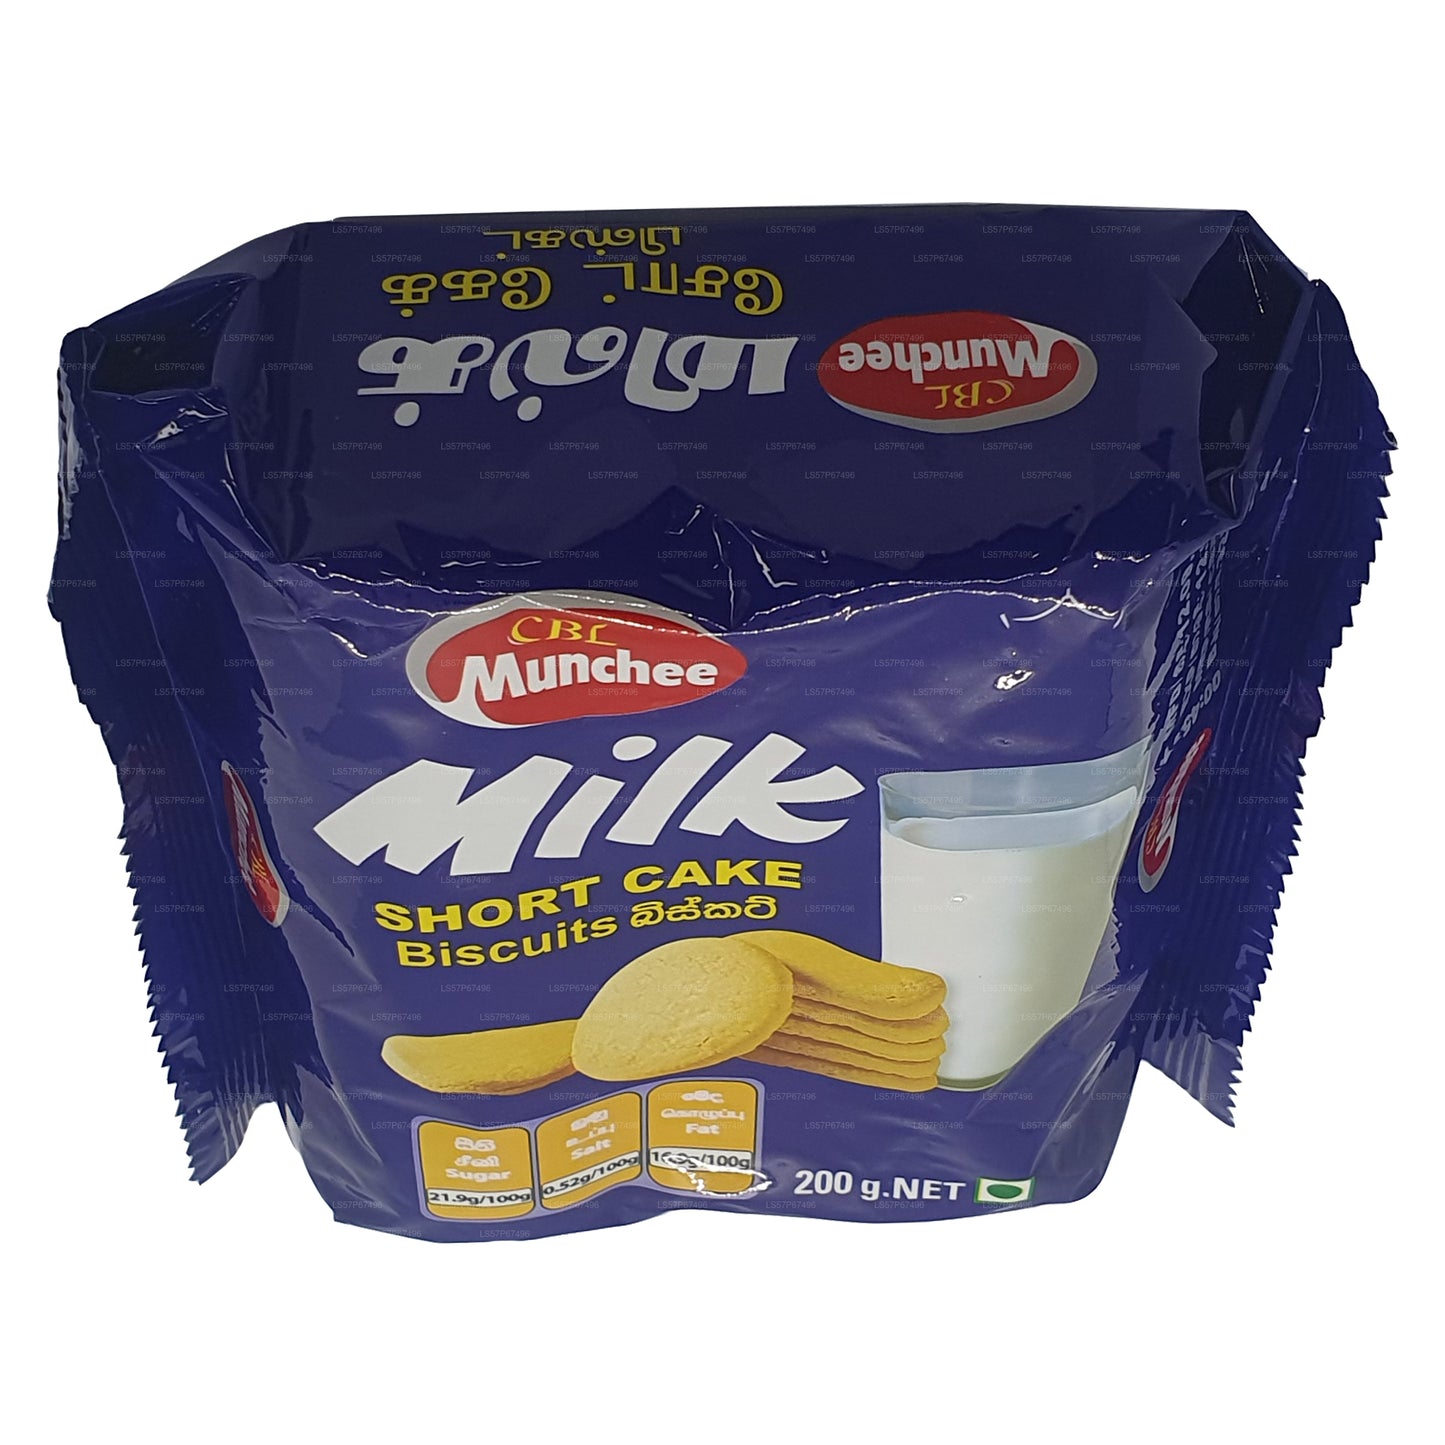 Munchee Milk Short Cake Koekjes (200 g)